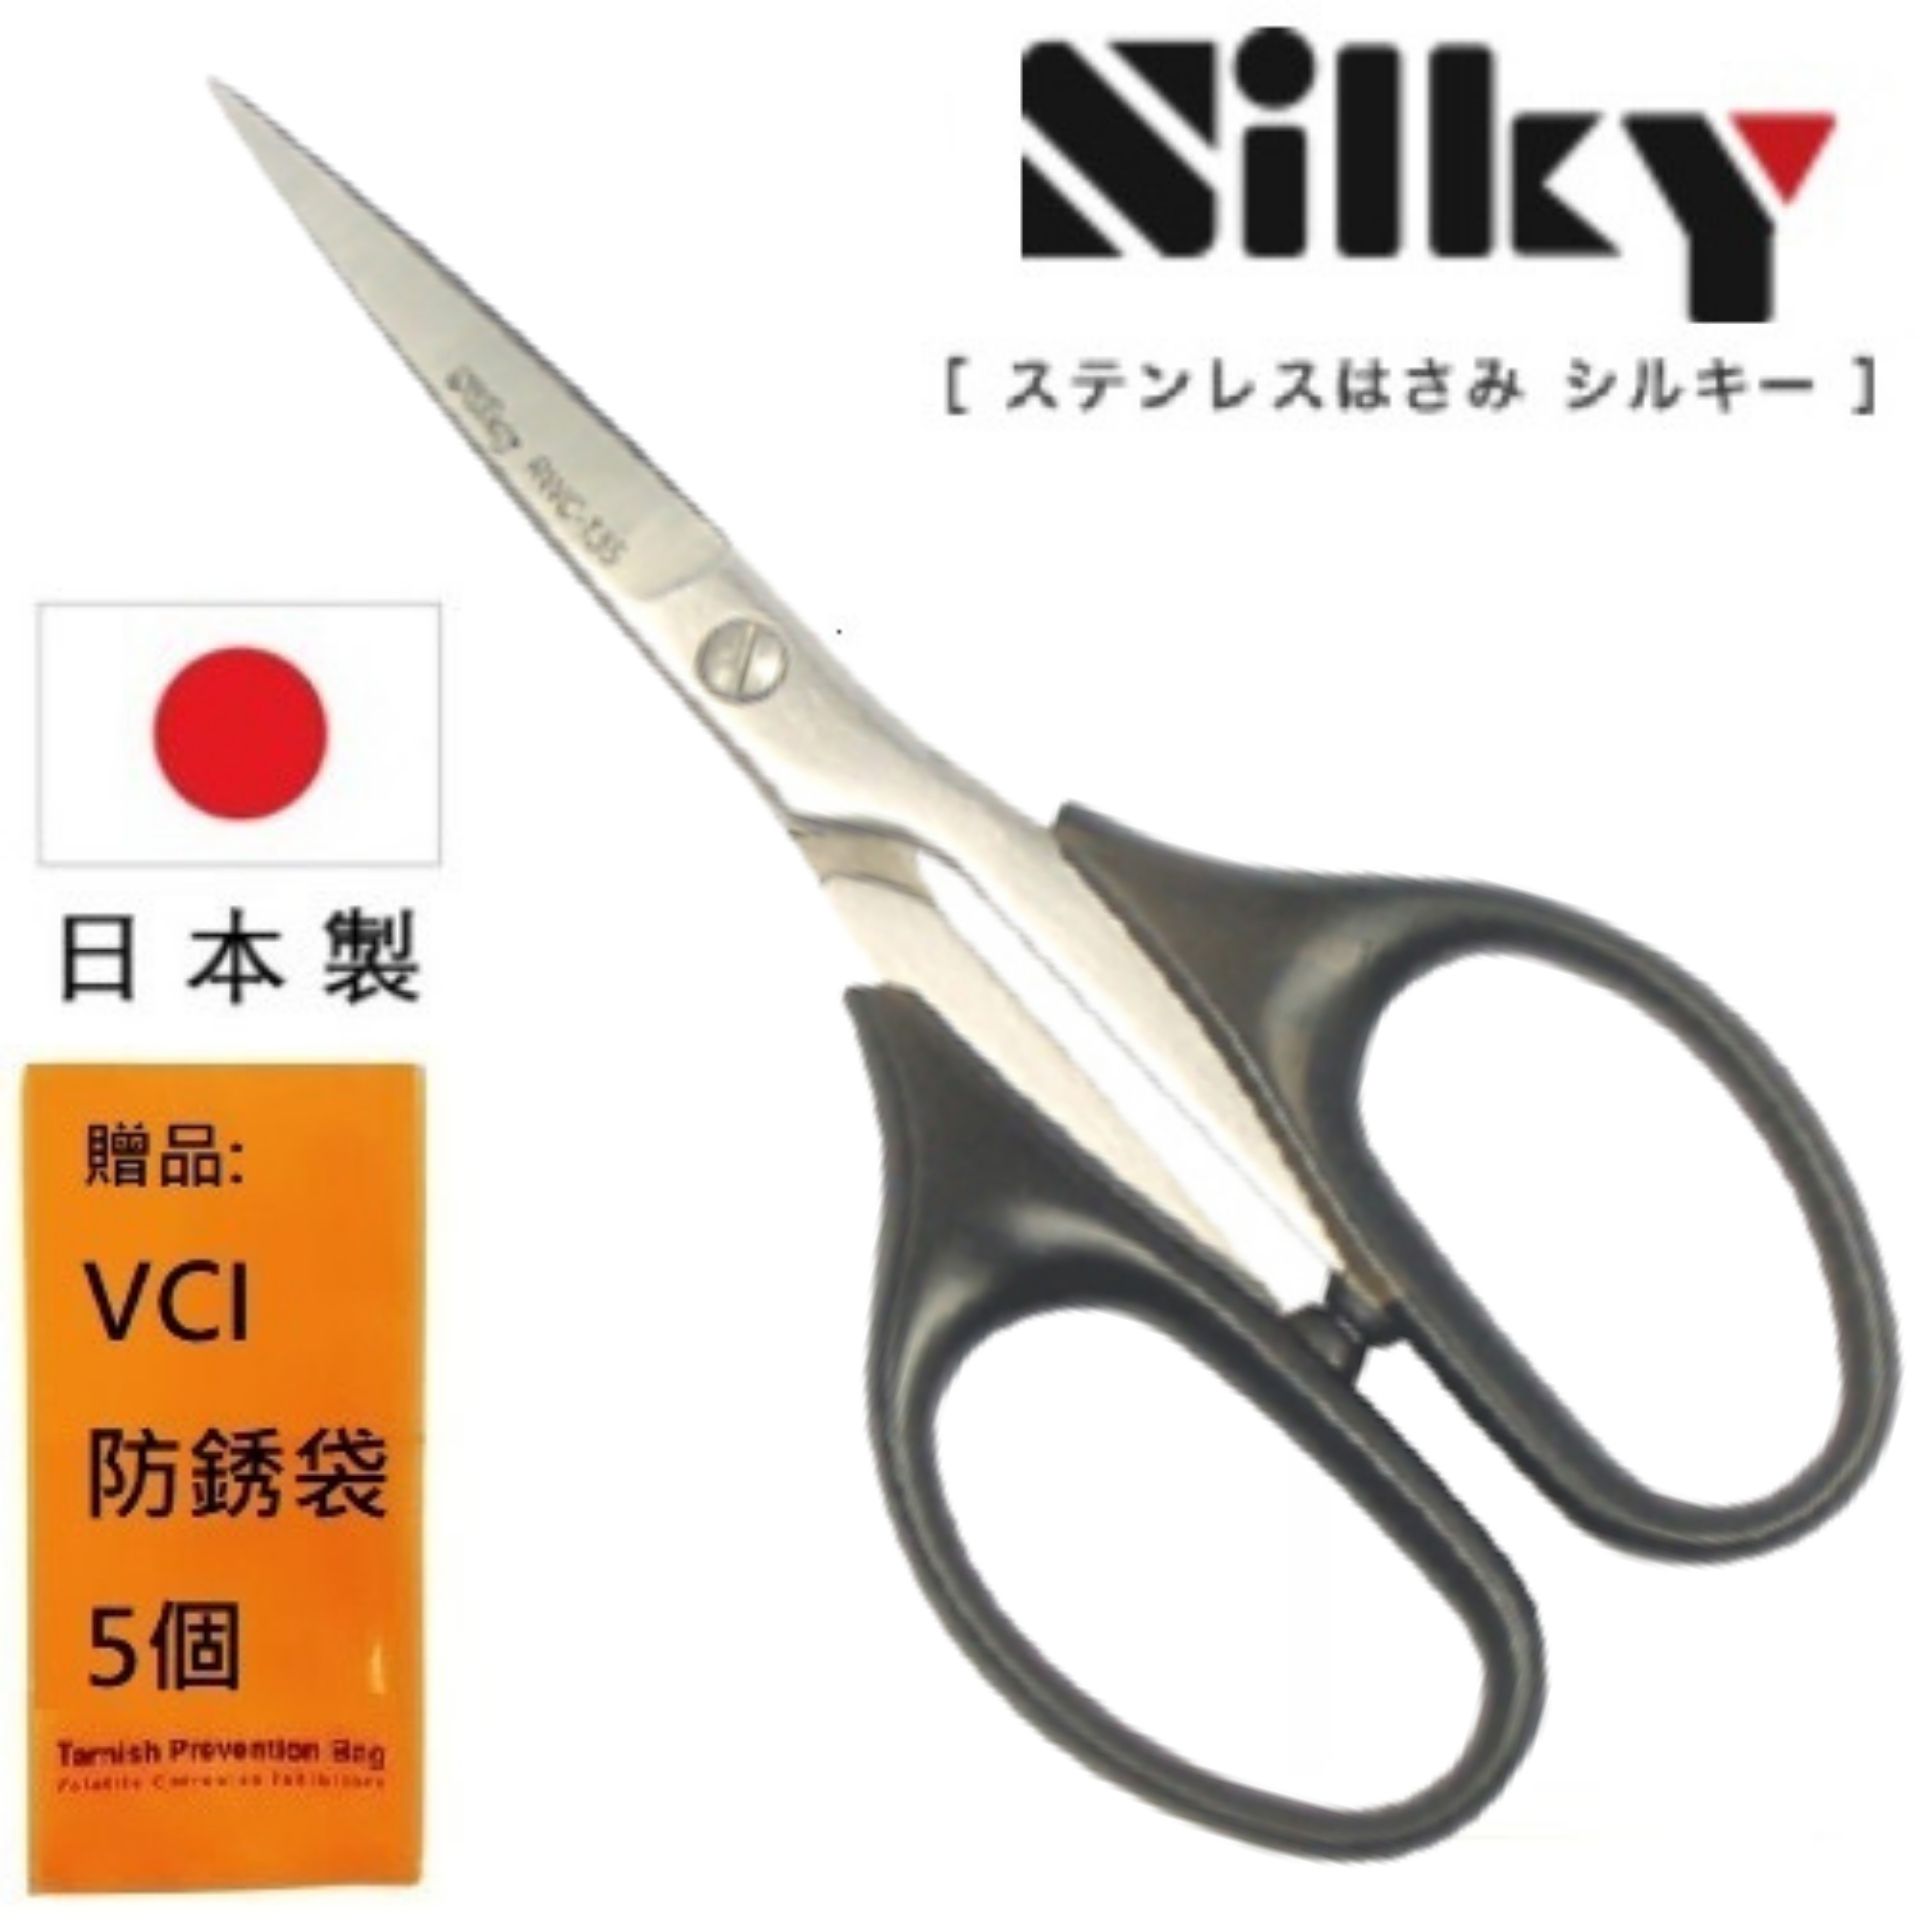 【日本SILKY】手工藝剪刀-135mm 高強度使用性、高度耐損機械性能